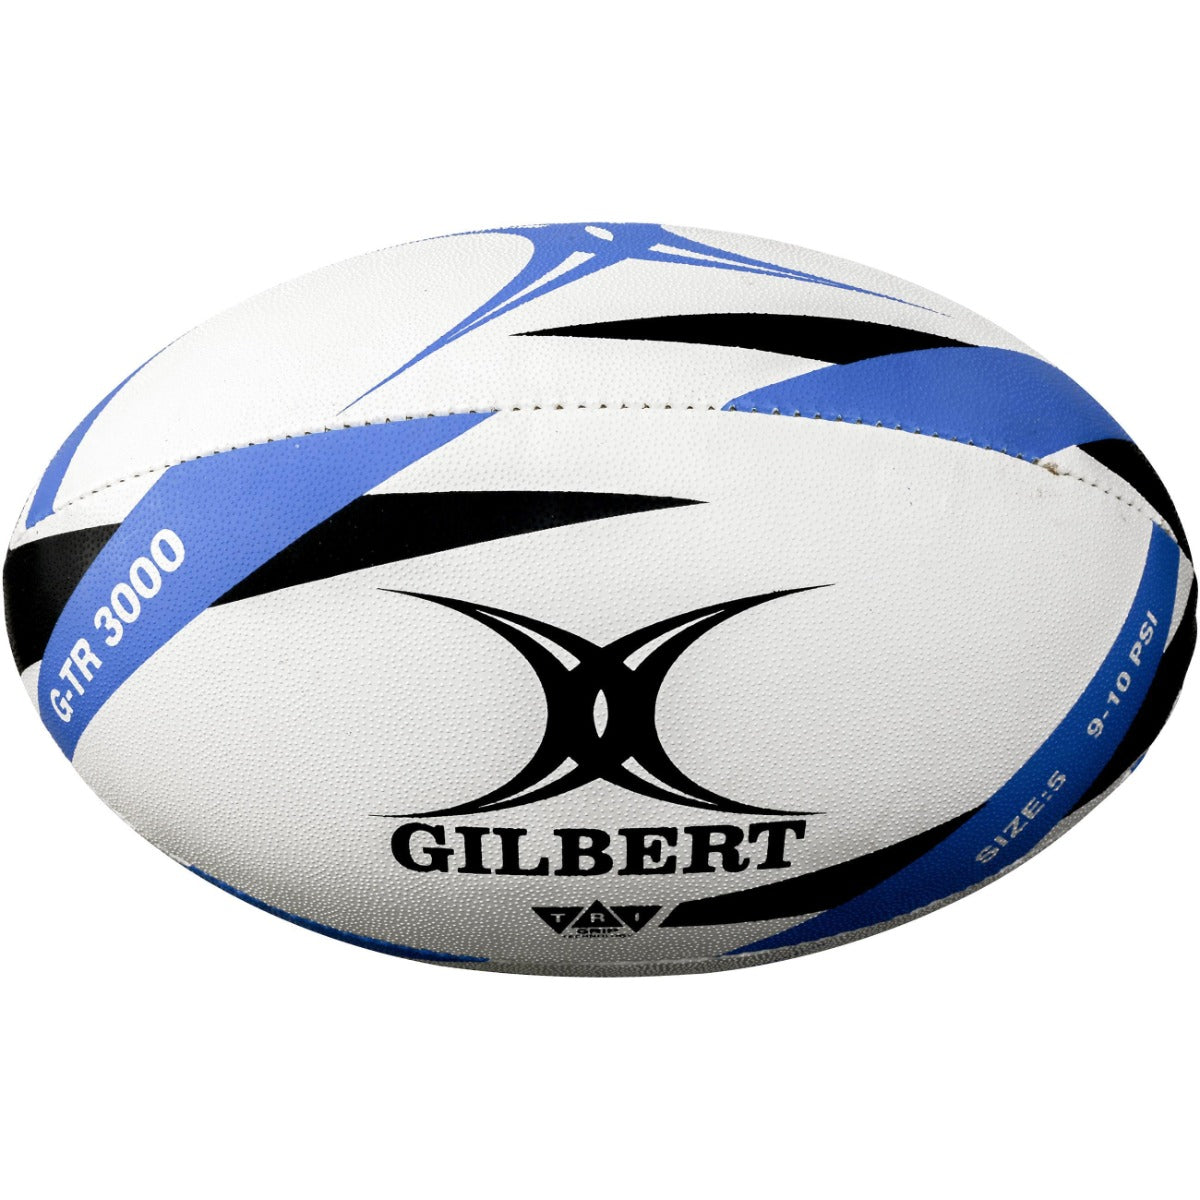 Gilbert G-tr3000 Rugby Ball